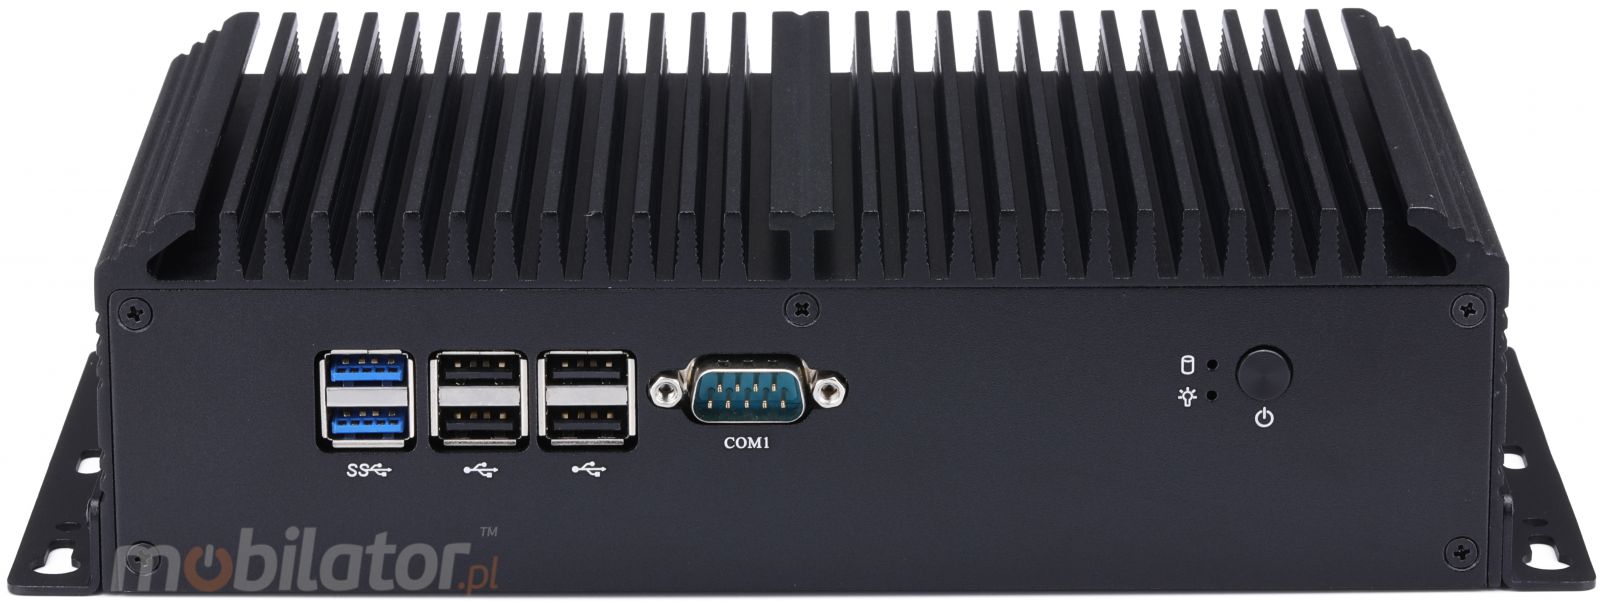 mBox X105 v.1 - Przemysowy MiniPC - procesor Intel Celeron 3855U - dysk M.2 - USB 3.0, 2x HDMI - Przd